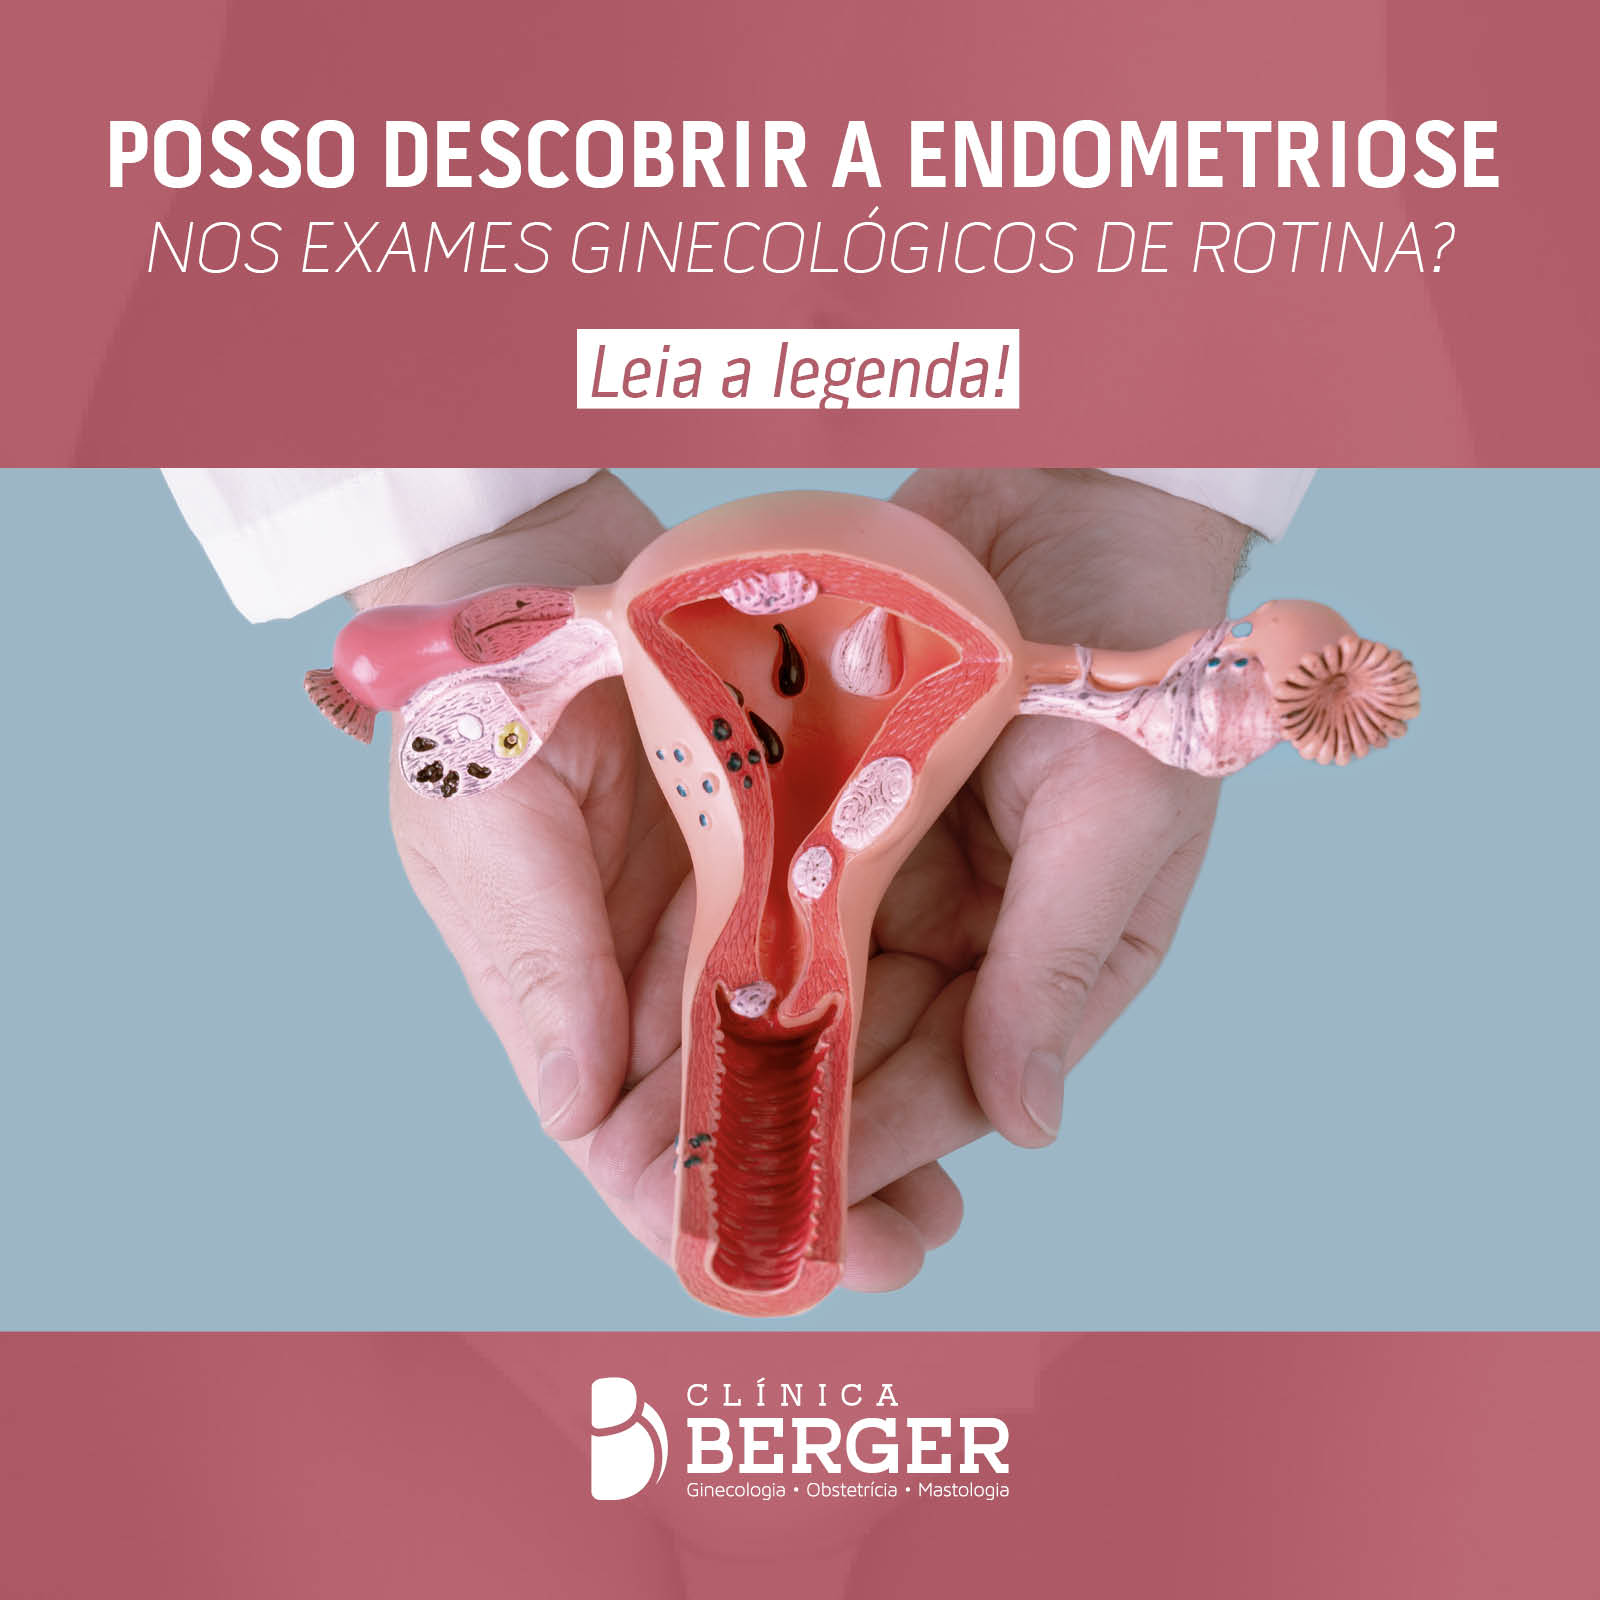 Posso descobrir a endometriose nos exames ginecológicos de rotina?